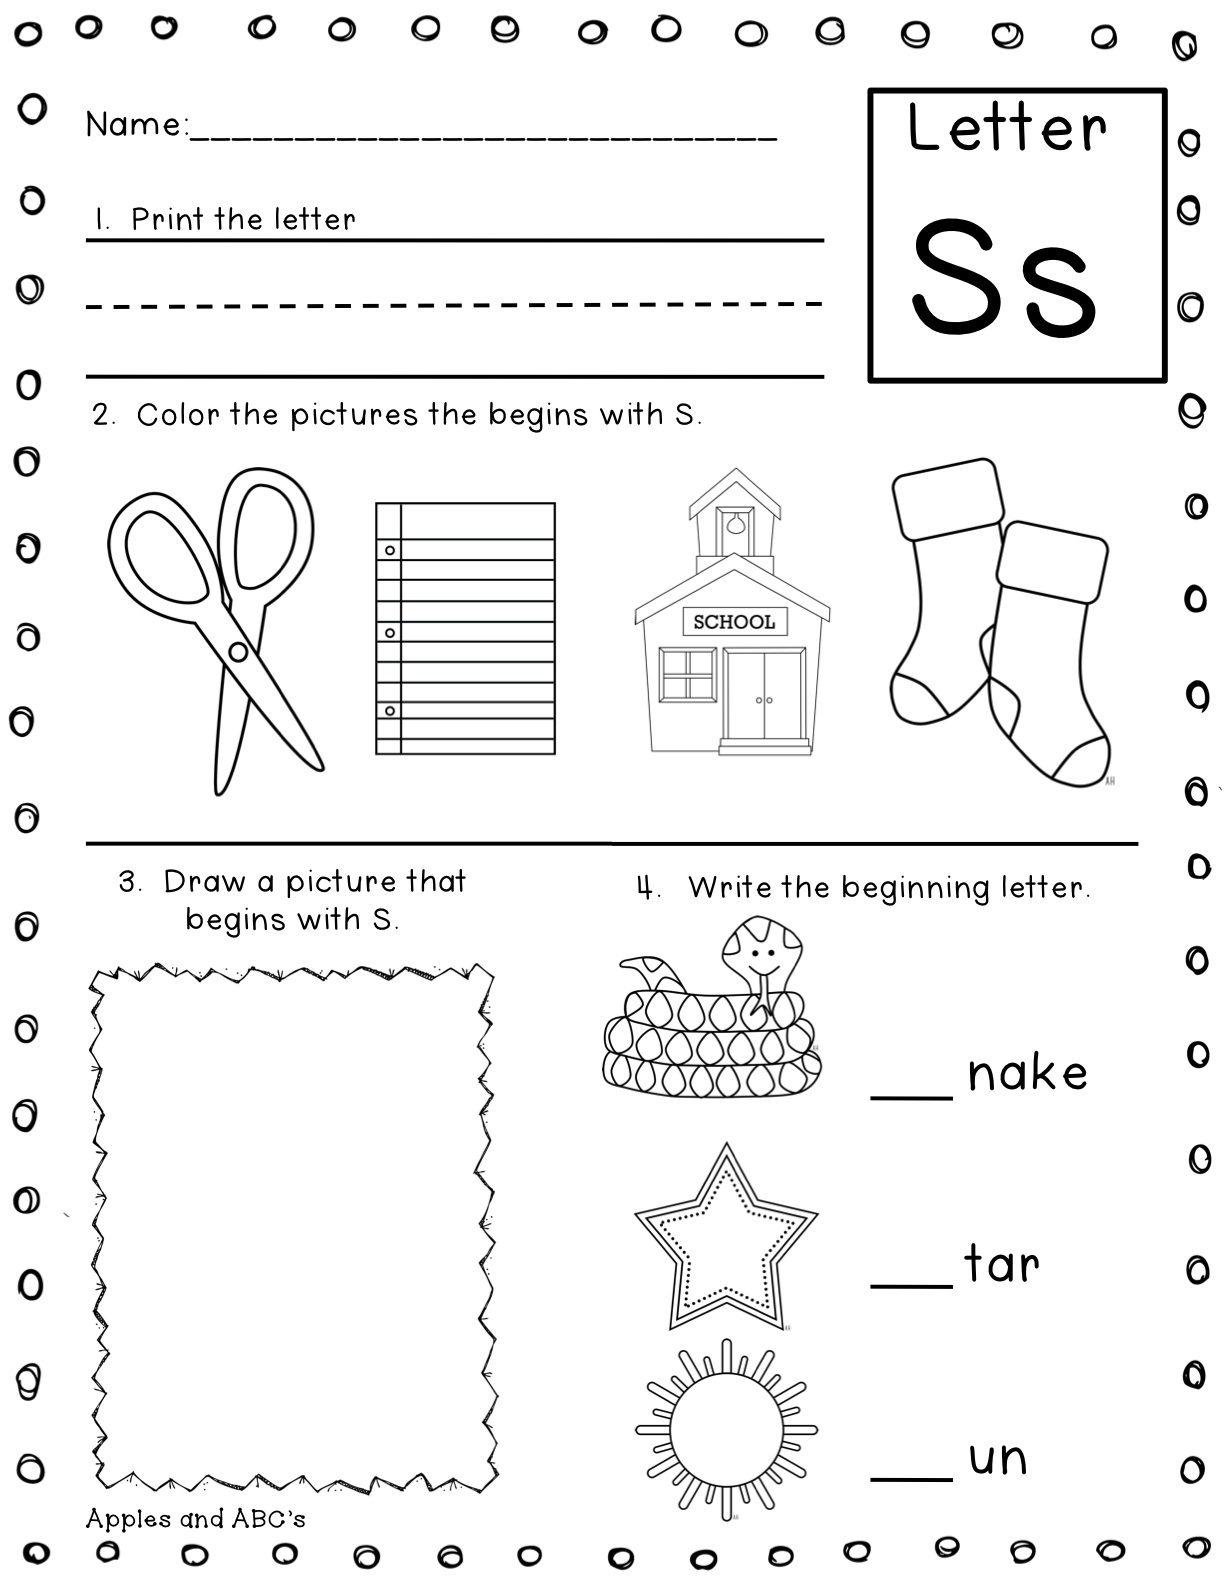 Letter Sounds Worksheets Printables Image